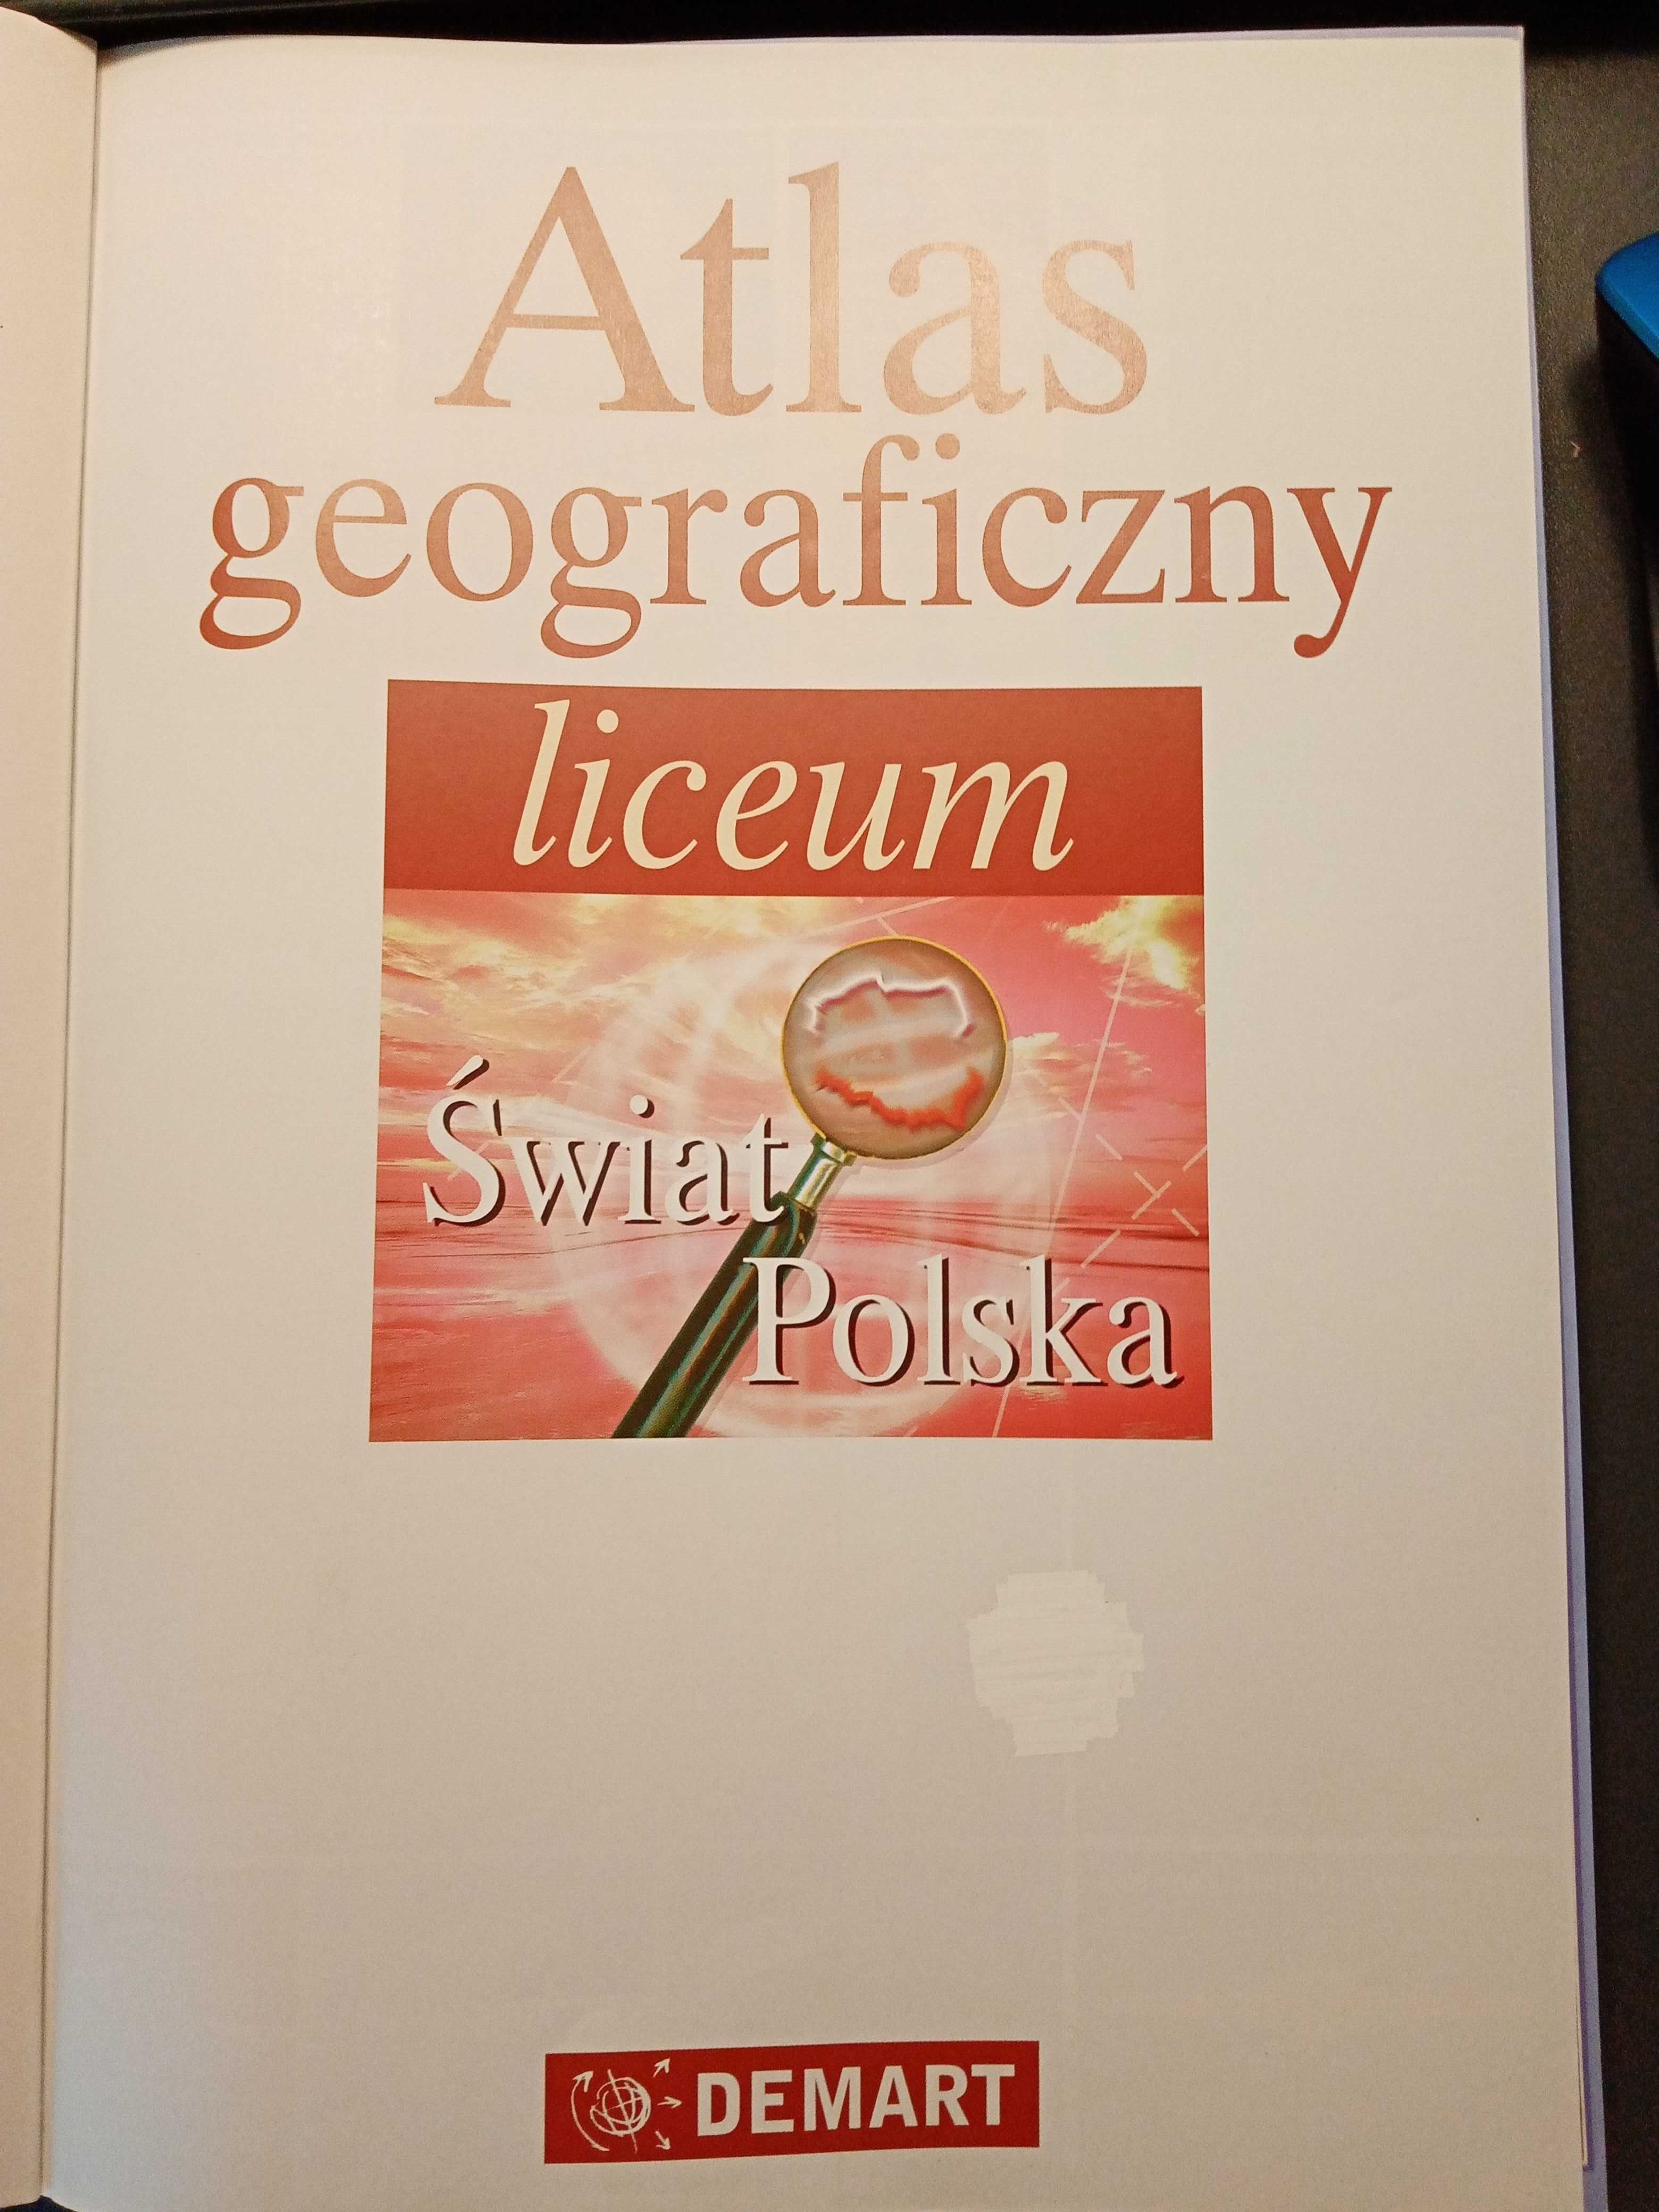 Atlas geograficzny liceum - świat Polska, wydanie rozszerzone